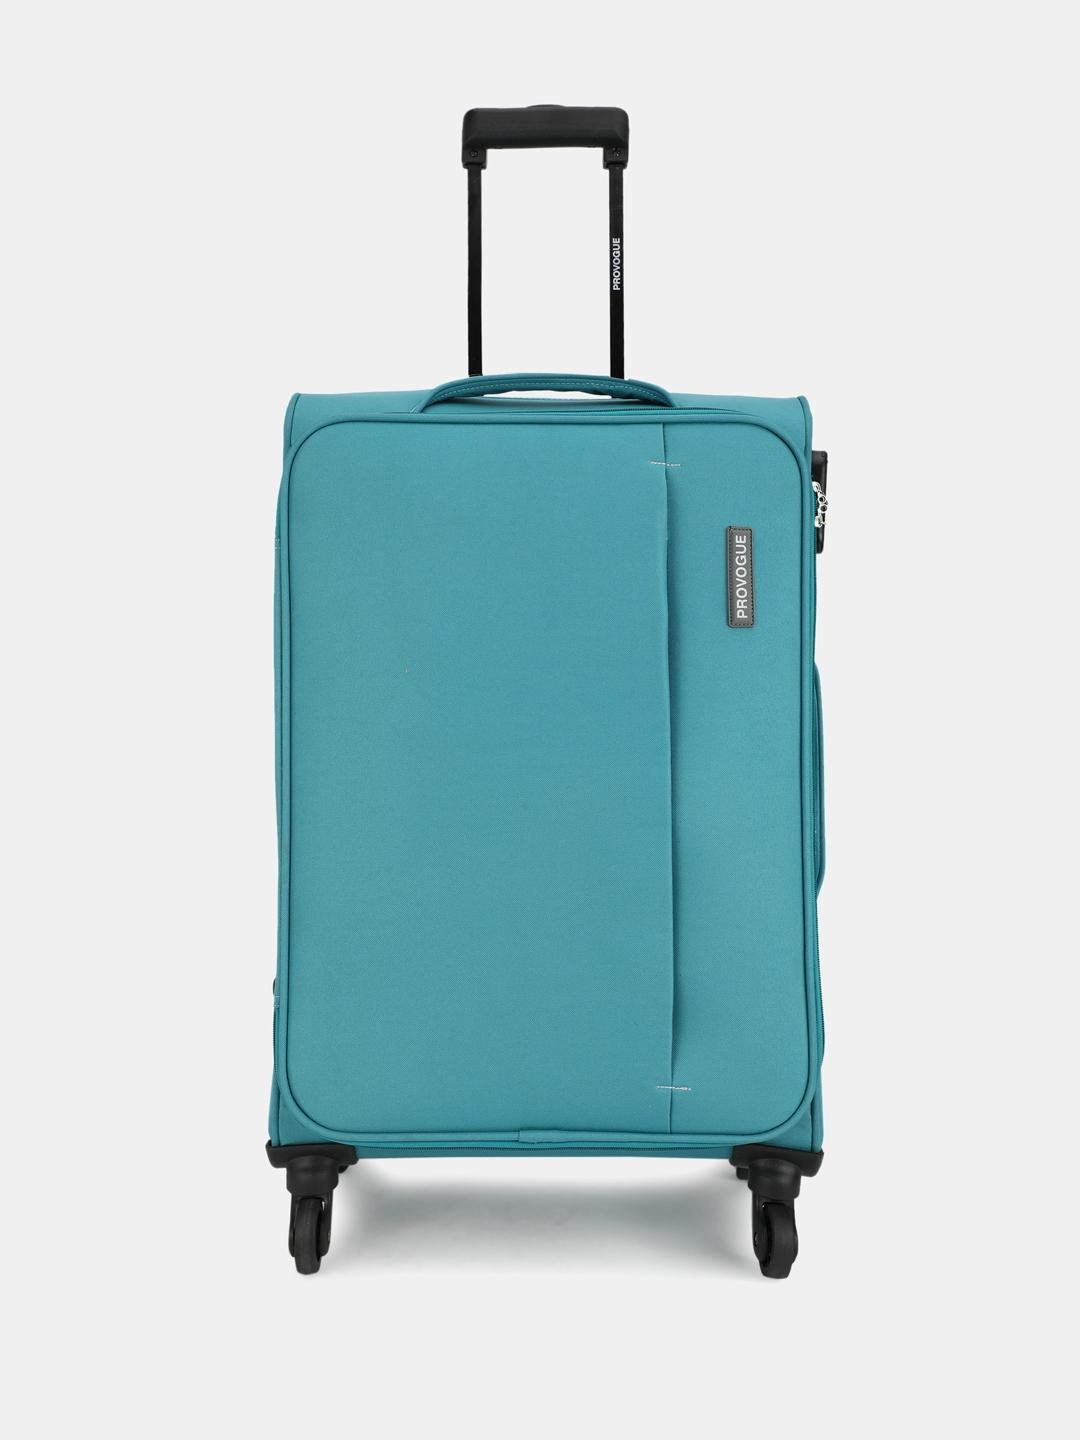 provogue unisex large trolley suitcase